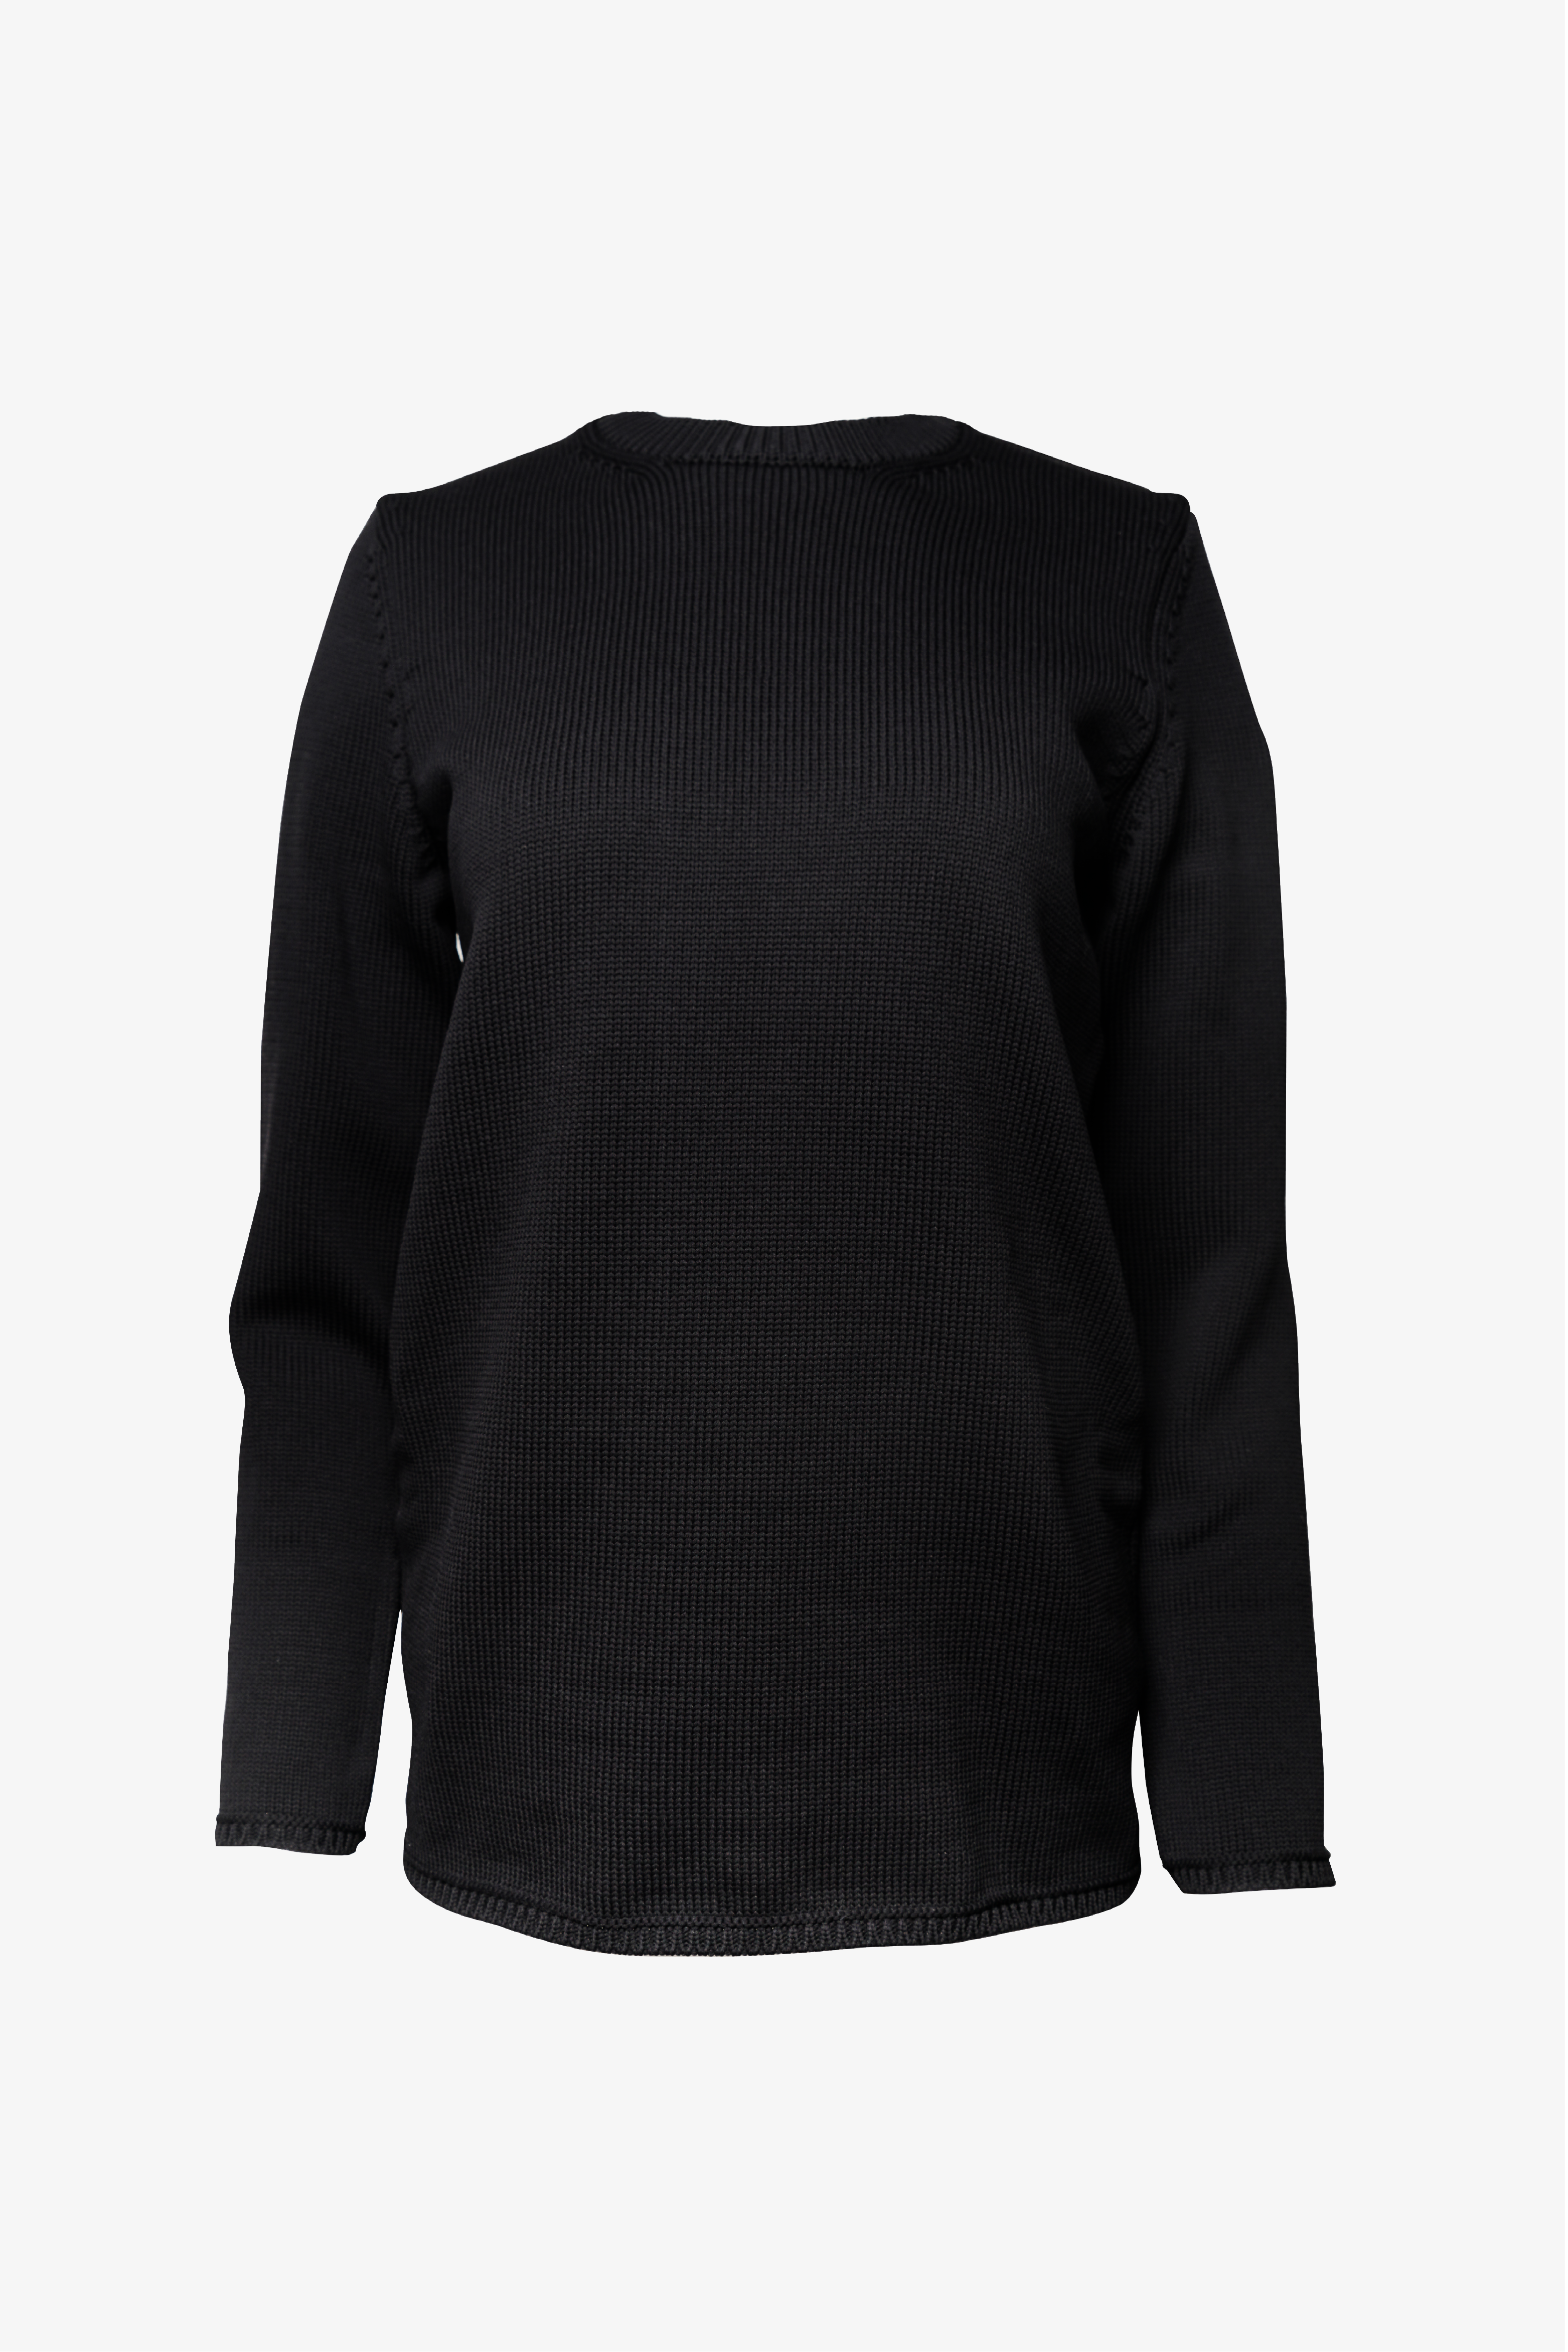 Selectshop FRAME - COMME DES GARÇONS Sweater Sweats-knits Dubai